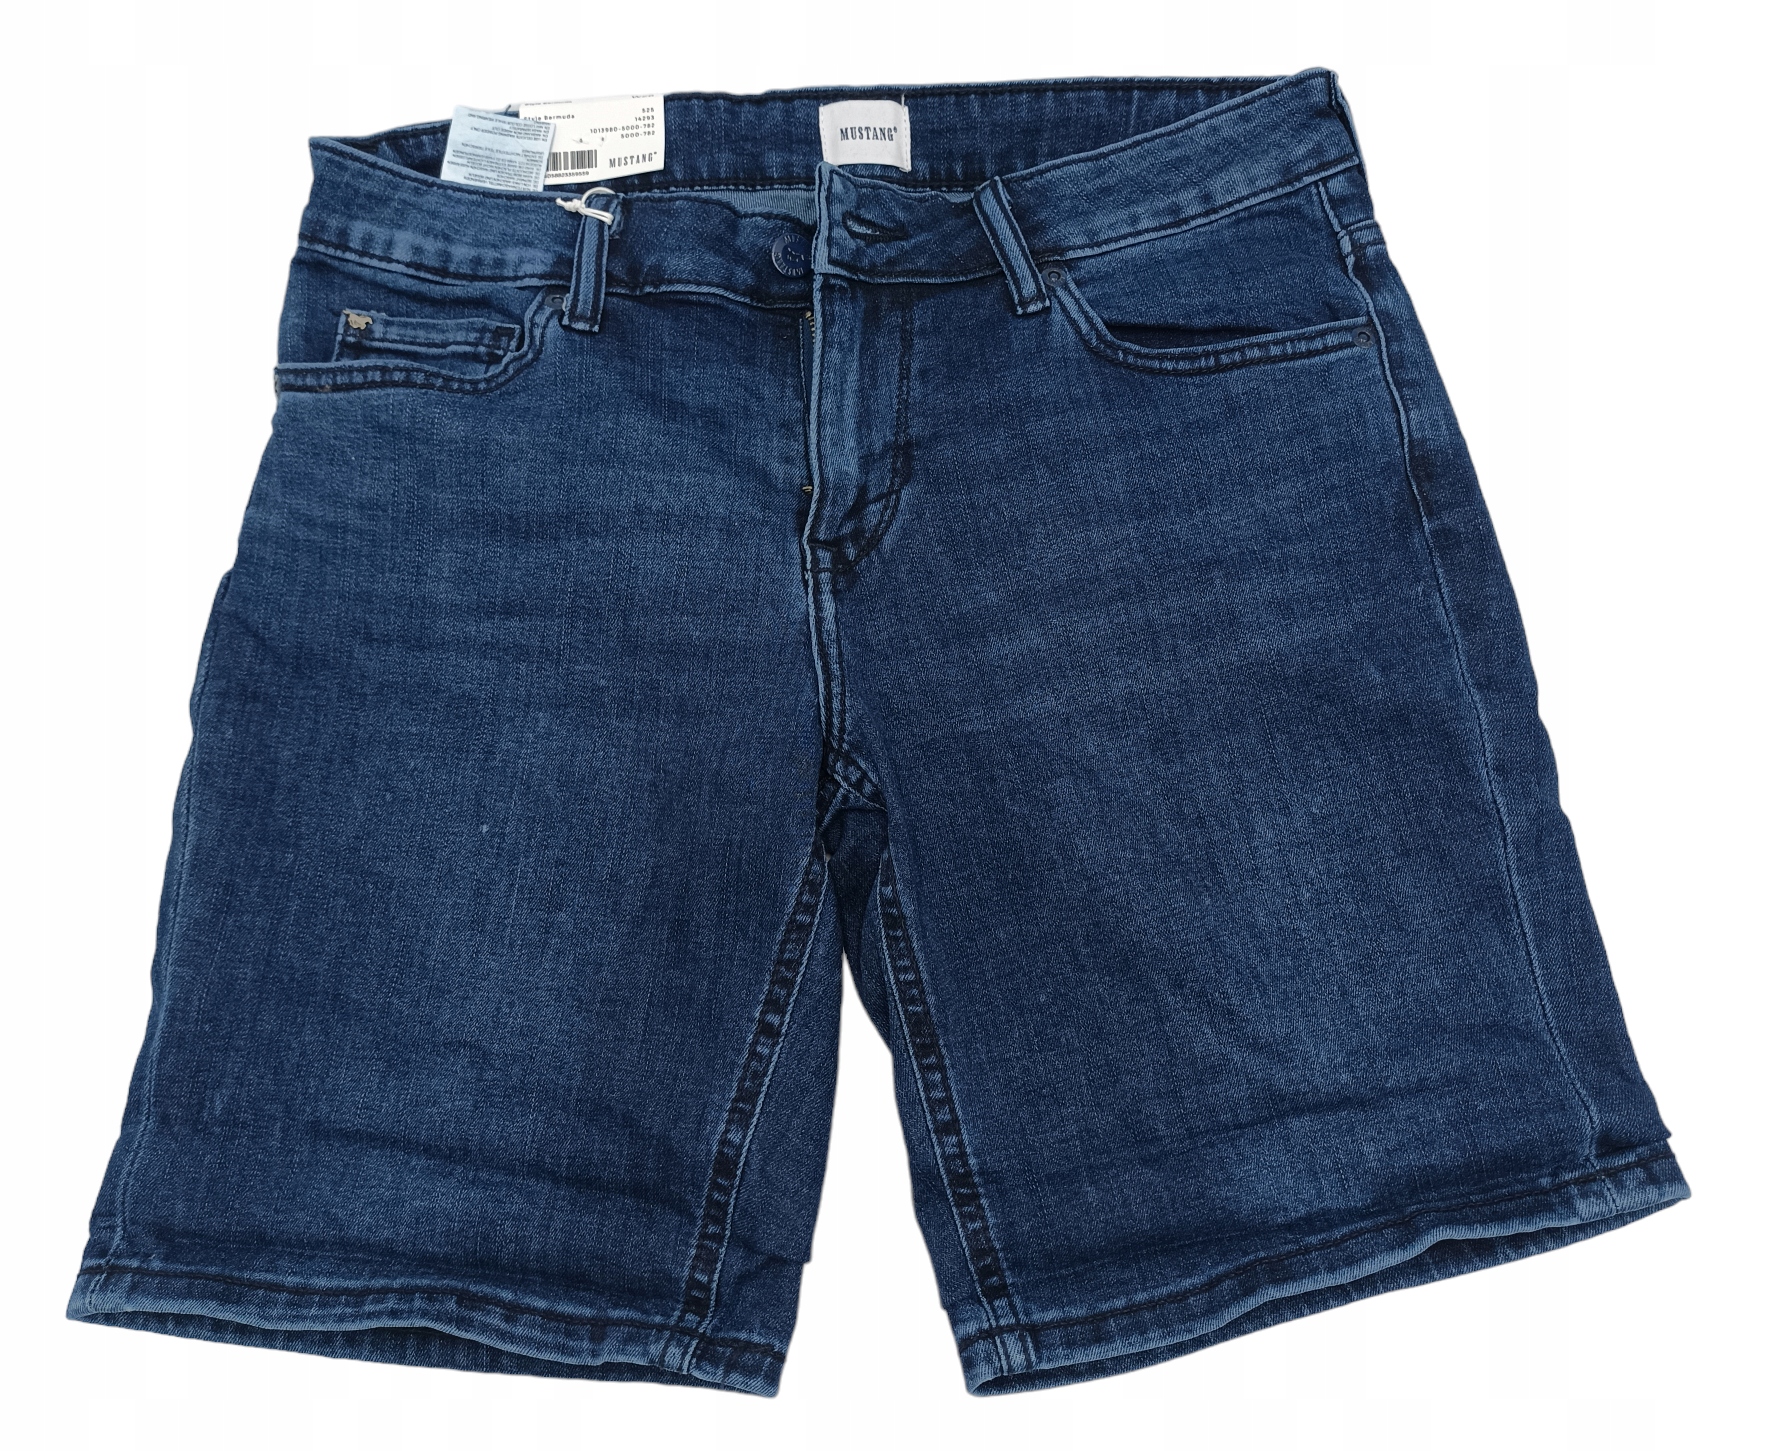 MUSTANG, dámske džínsové šortky pred koleno, r.W28